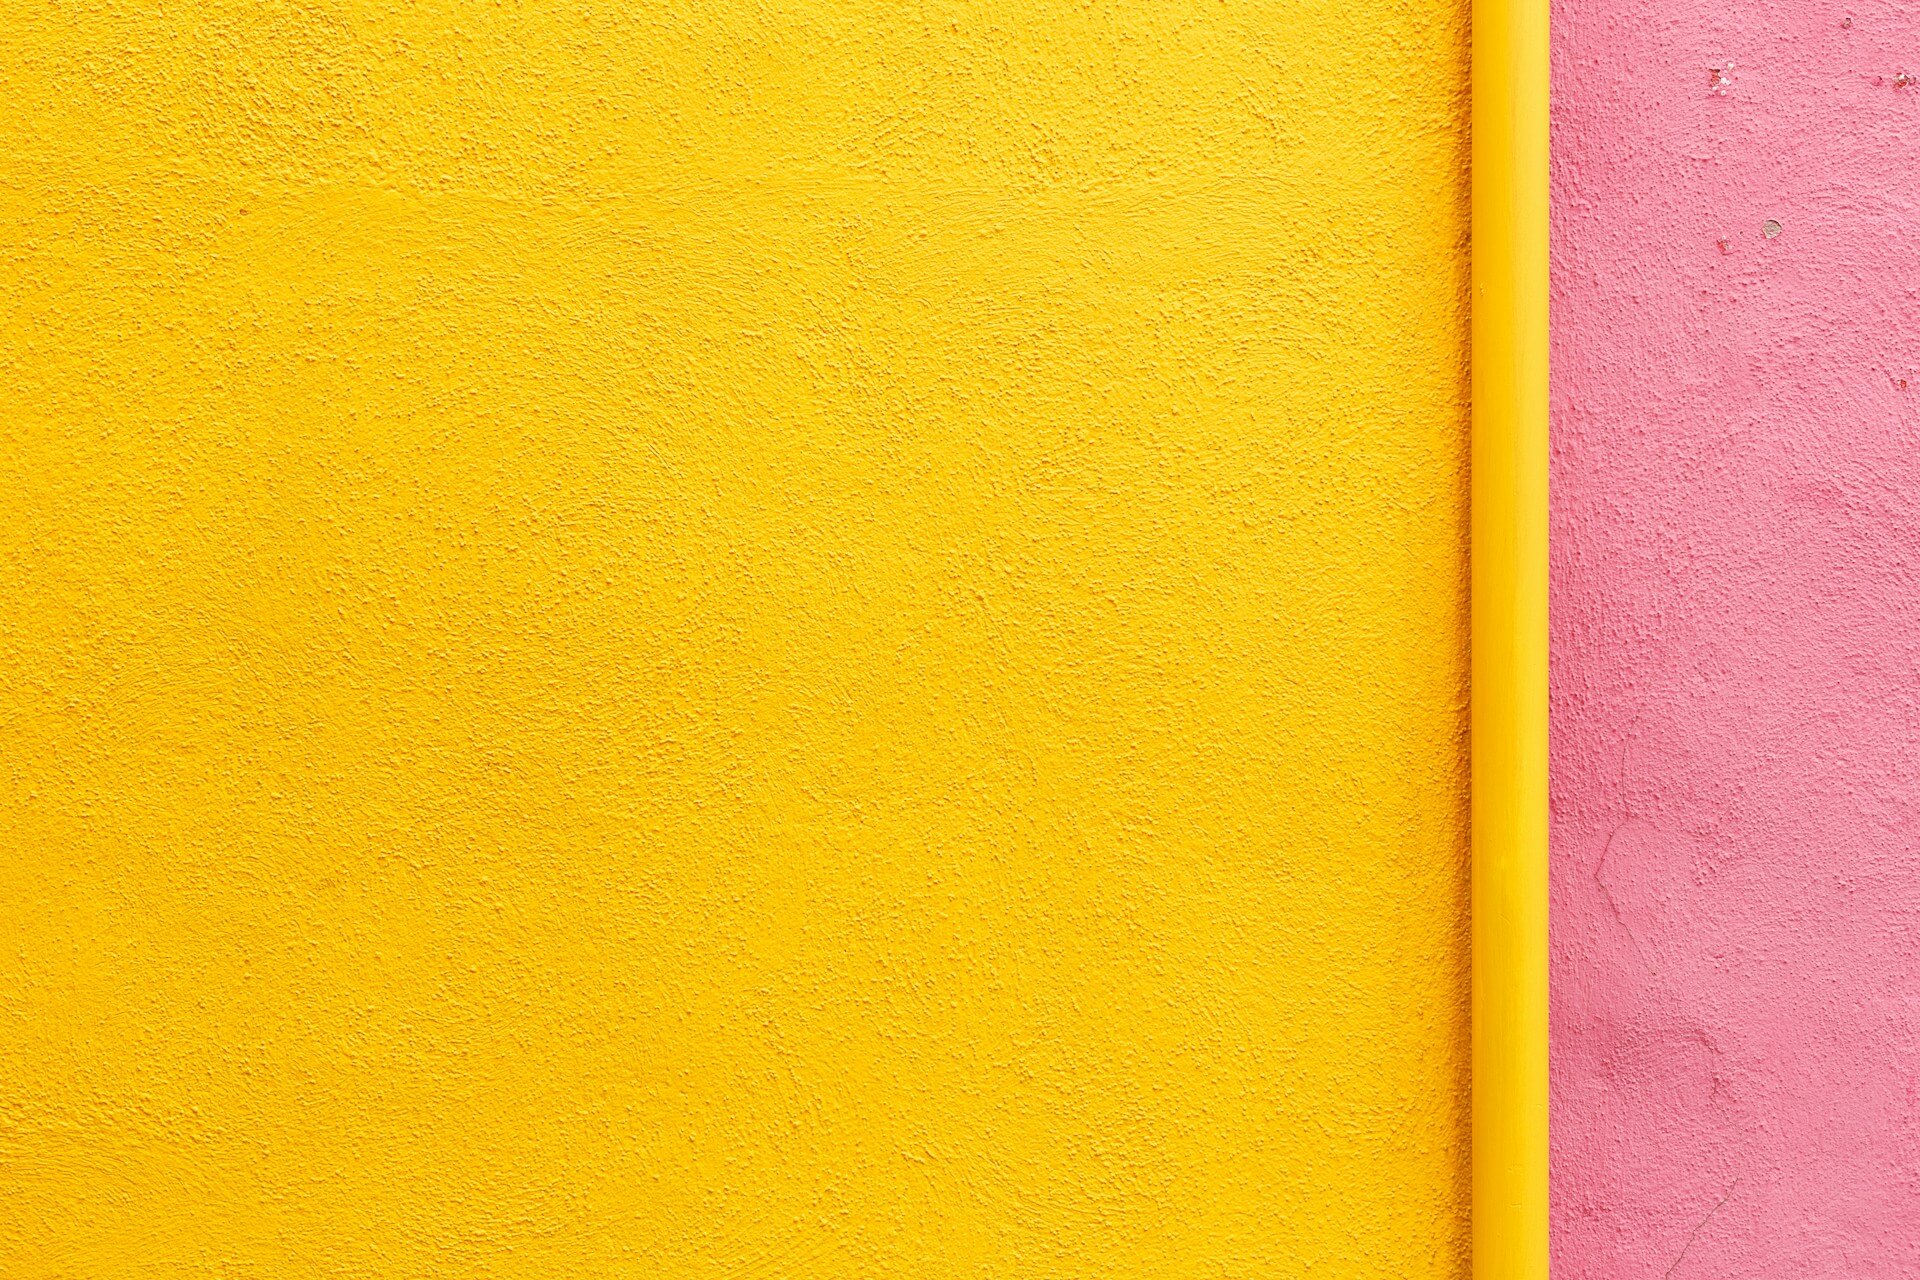 Gelbe und rosa strukturierte Wände treffen an einer Ecke mit einer dünnen gelben Trennlinie zusammen.